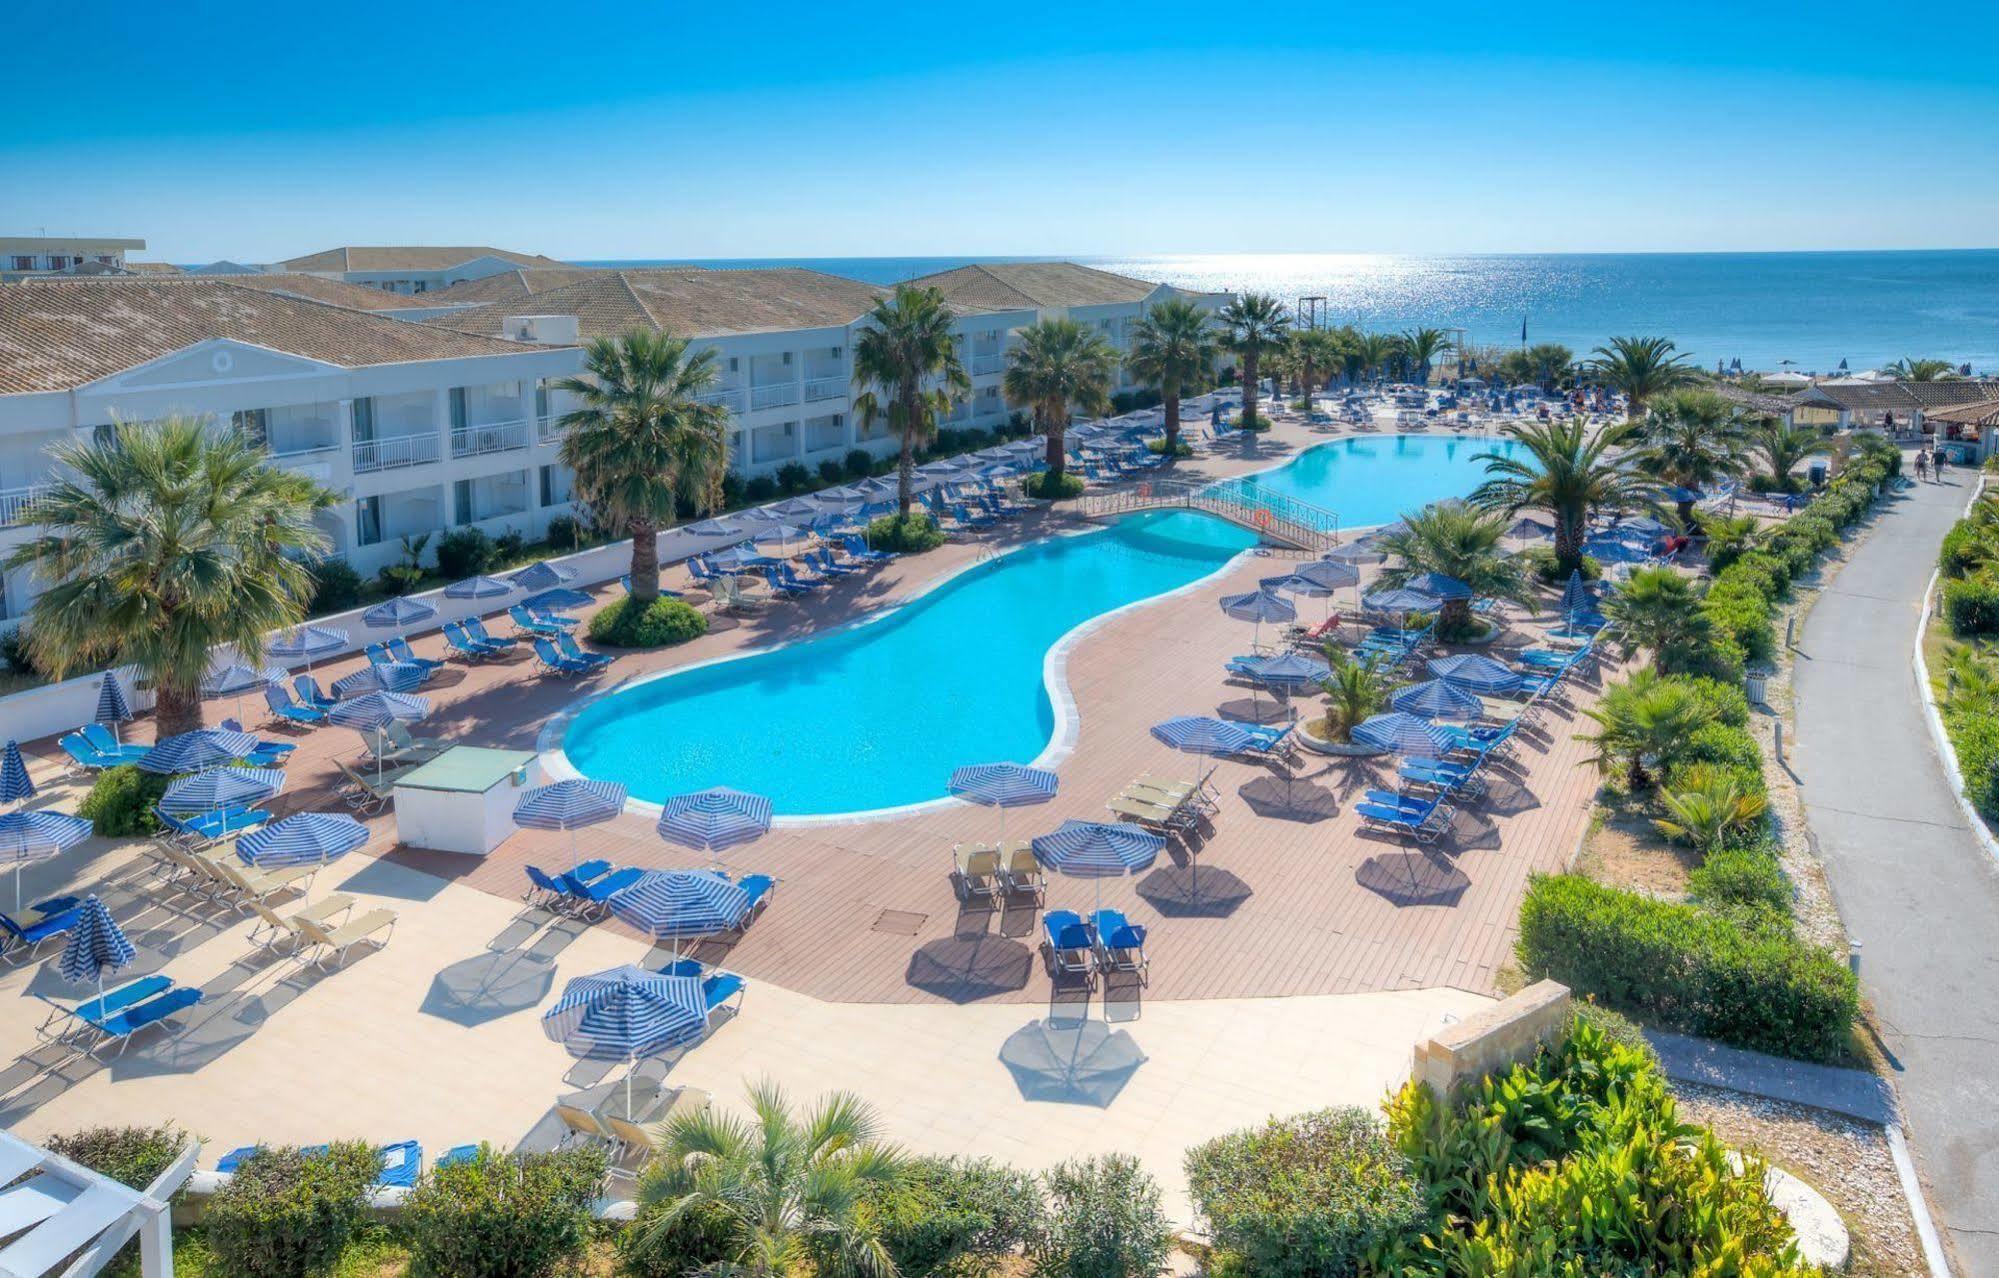 Ξενοδοχείο LABRANDA SANDY BEACH ΆΓΙΟΣ ΓΕΏΡΓΙΟΣ 4* (Ελλάδα) - από € 67 | iBOOKED